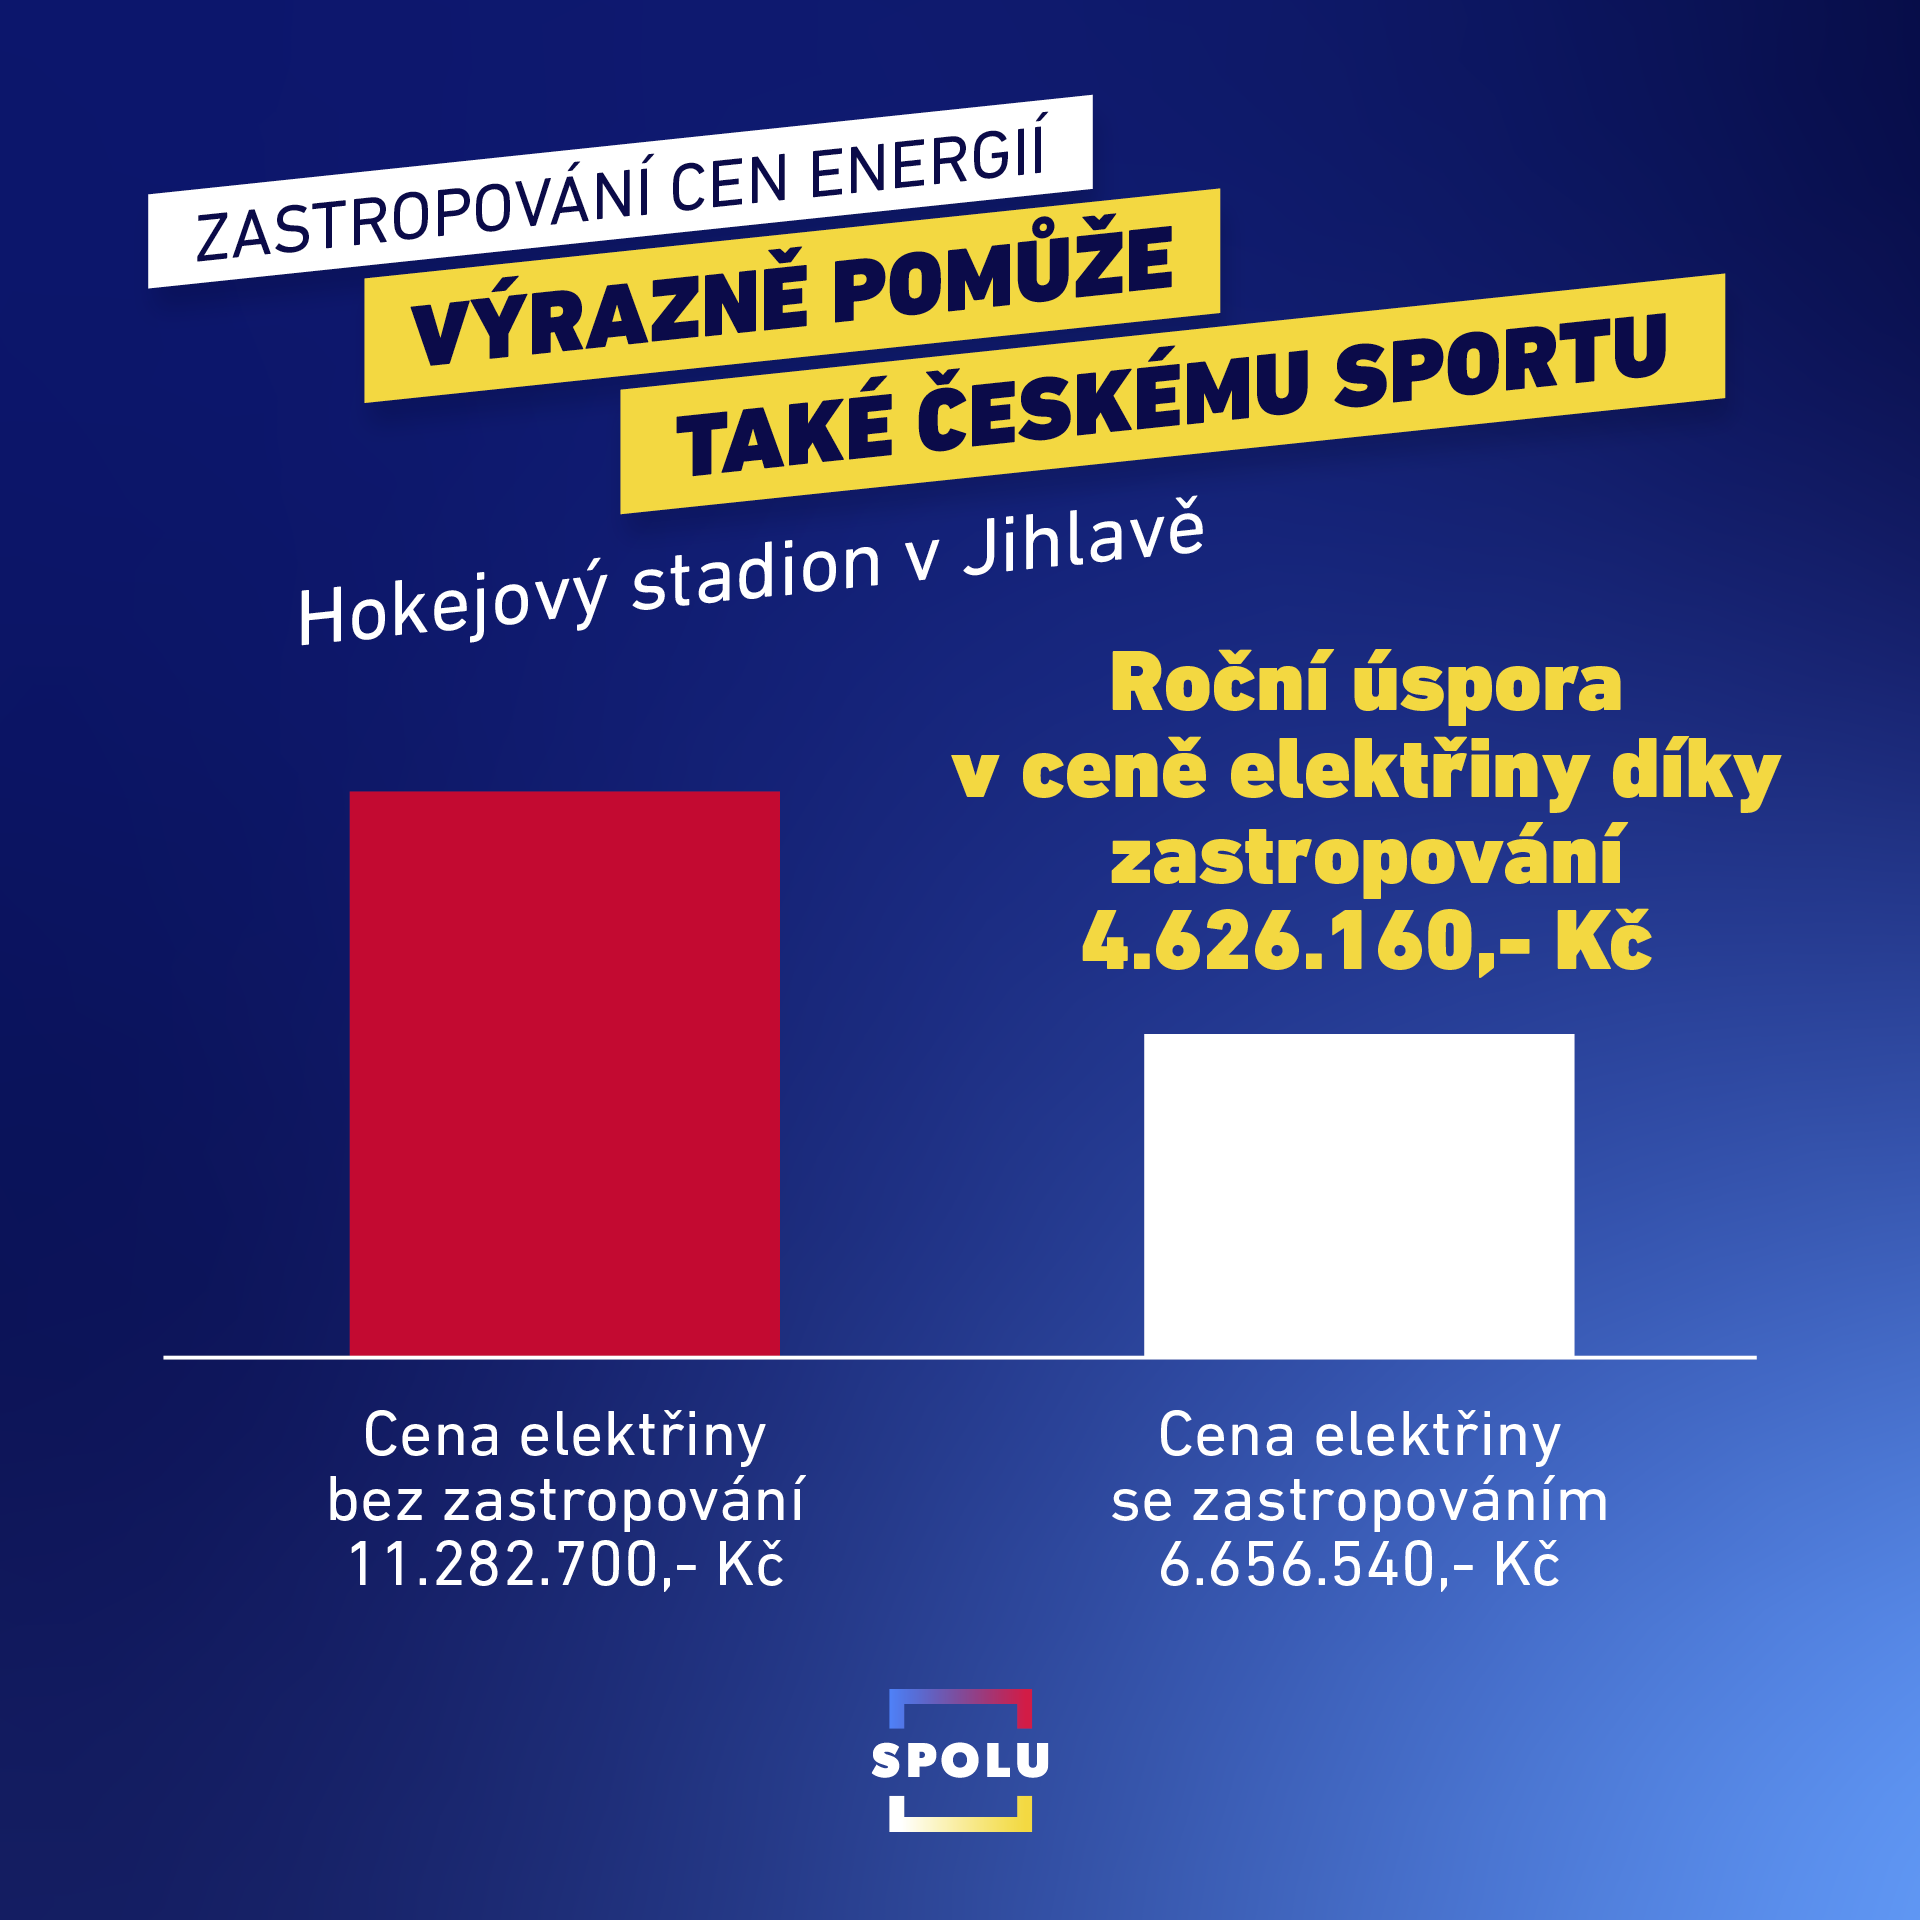 Zastropování cen energií výrazně pomůže i českému sportu